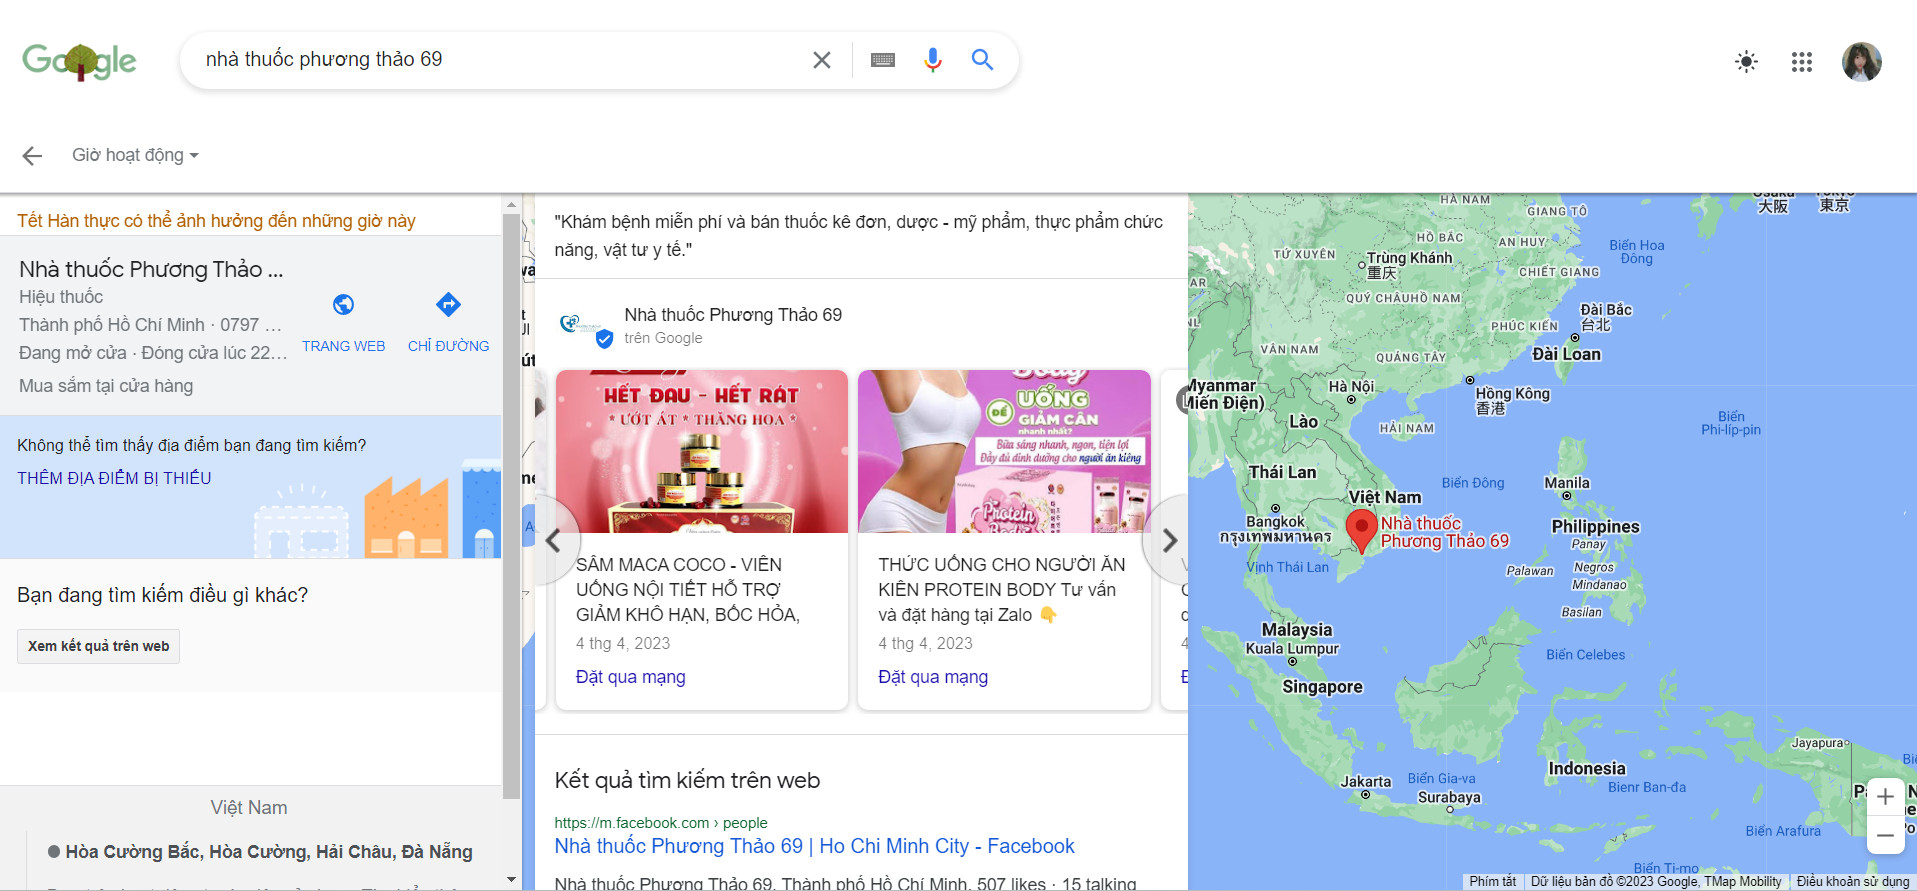 PharmarZ đưa các sản phẩm bán chạy nhất của nhà thuốc lên Google Map, đấu nối dữ liệu để khách hàng có thể mua hàng trực tuyến trên Zalo OA của nhà thuốc